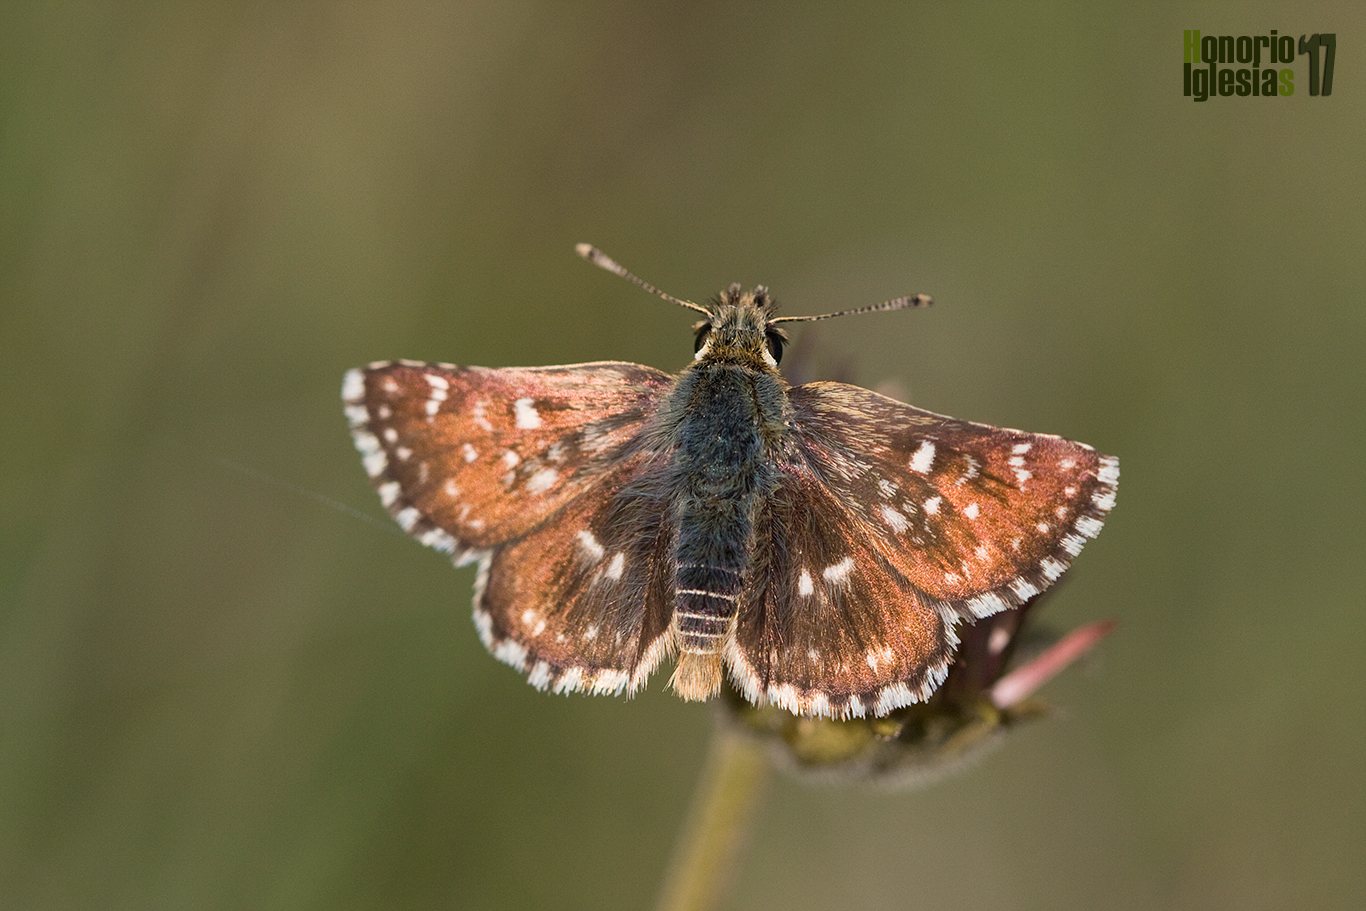 Ejemplar de mariposa sertorio (Spialia sertorius) mostrando su anverso alar de un color rojizo muy característico.